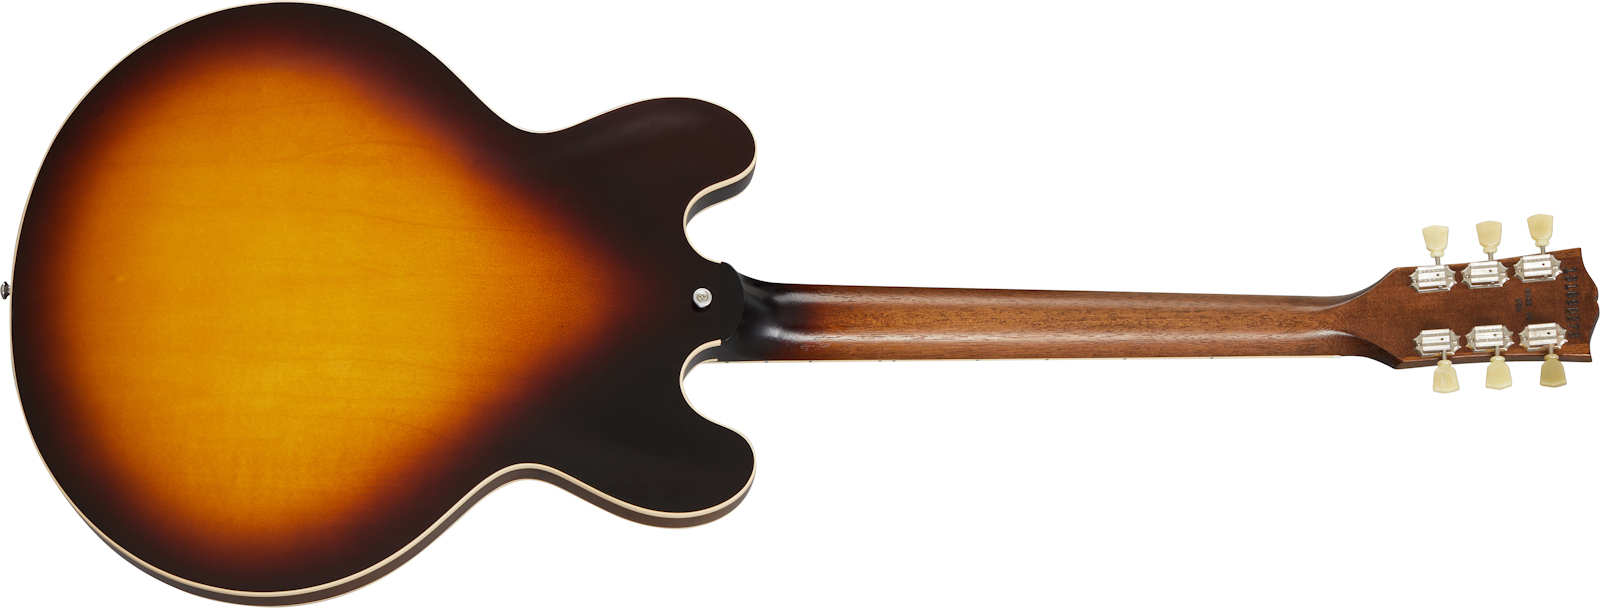 Gibson ES-335 Satin 2020 - satin vintage sunburst Semi-hollow